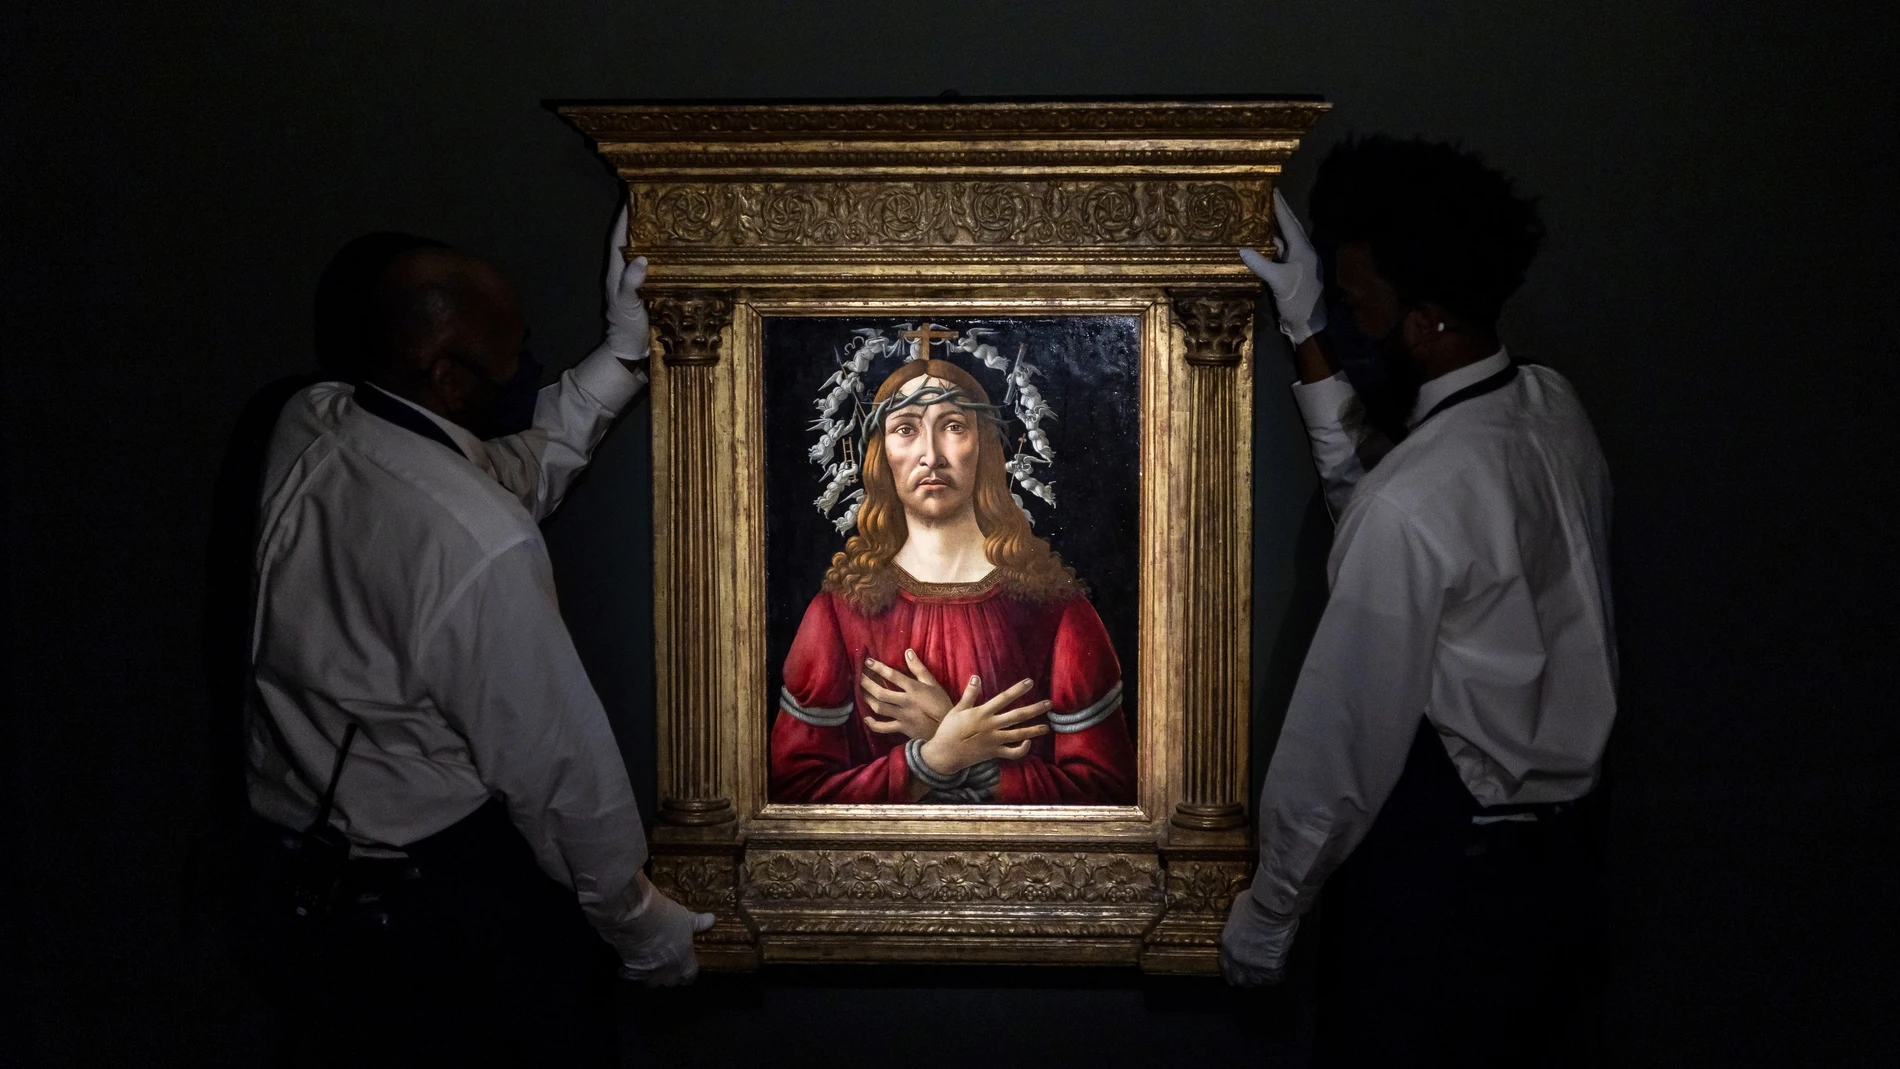 Manejadores de arte de Sotheby's cargan la pintura "El varón de los dolores" de Sandro Botticelli